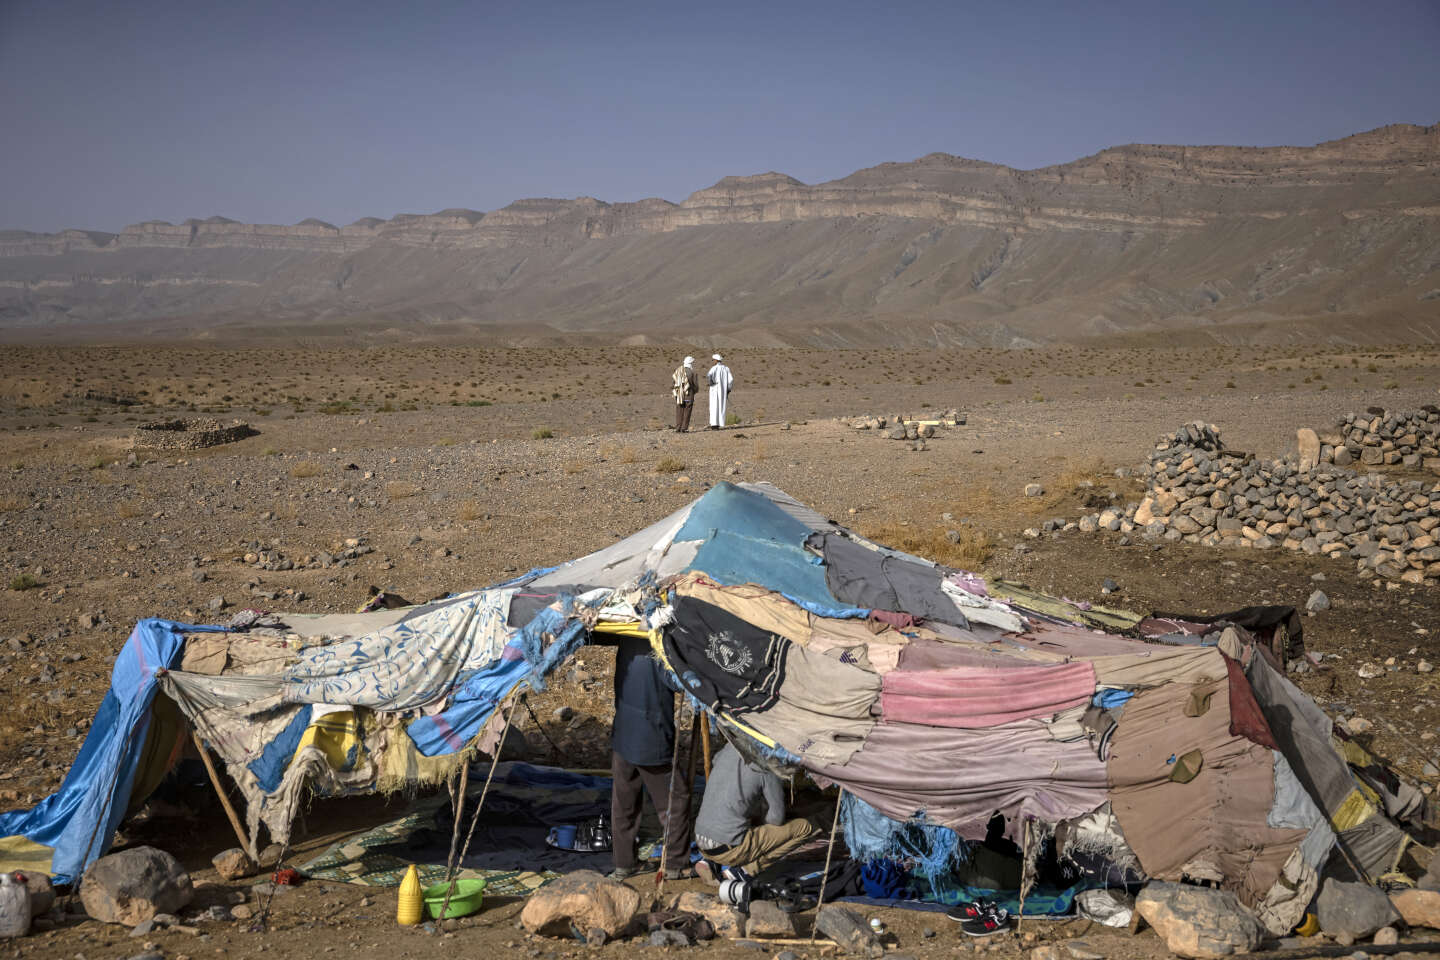 In Marokko worden de laatste nomaden getest vanwege klimaatverandering